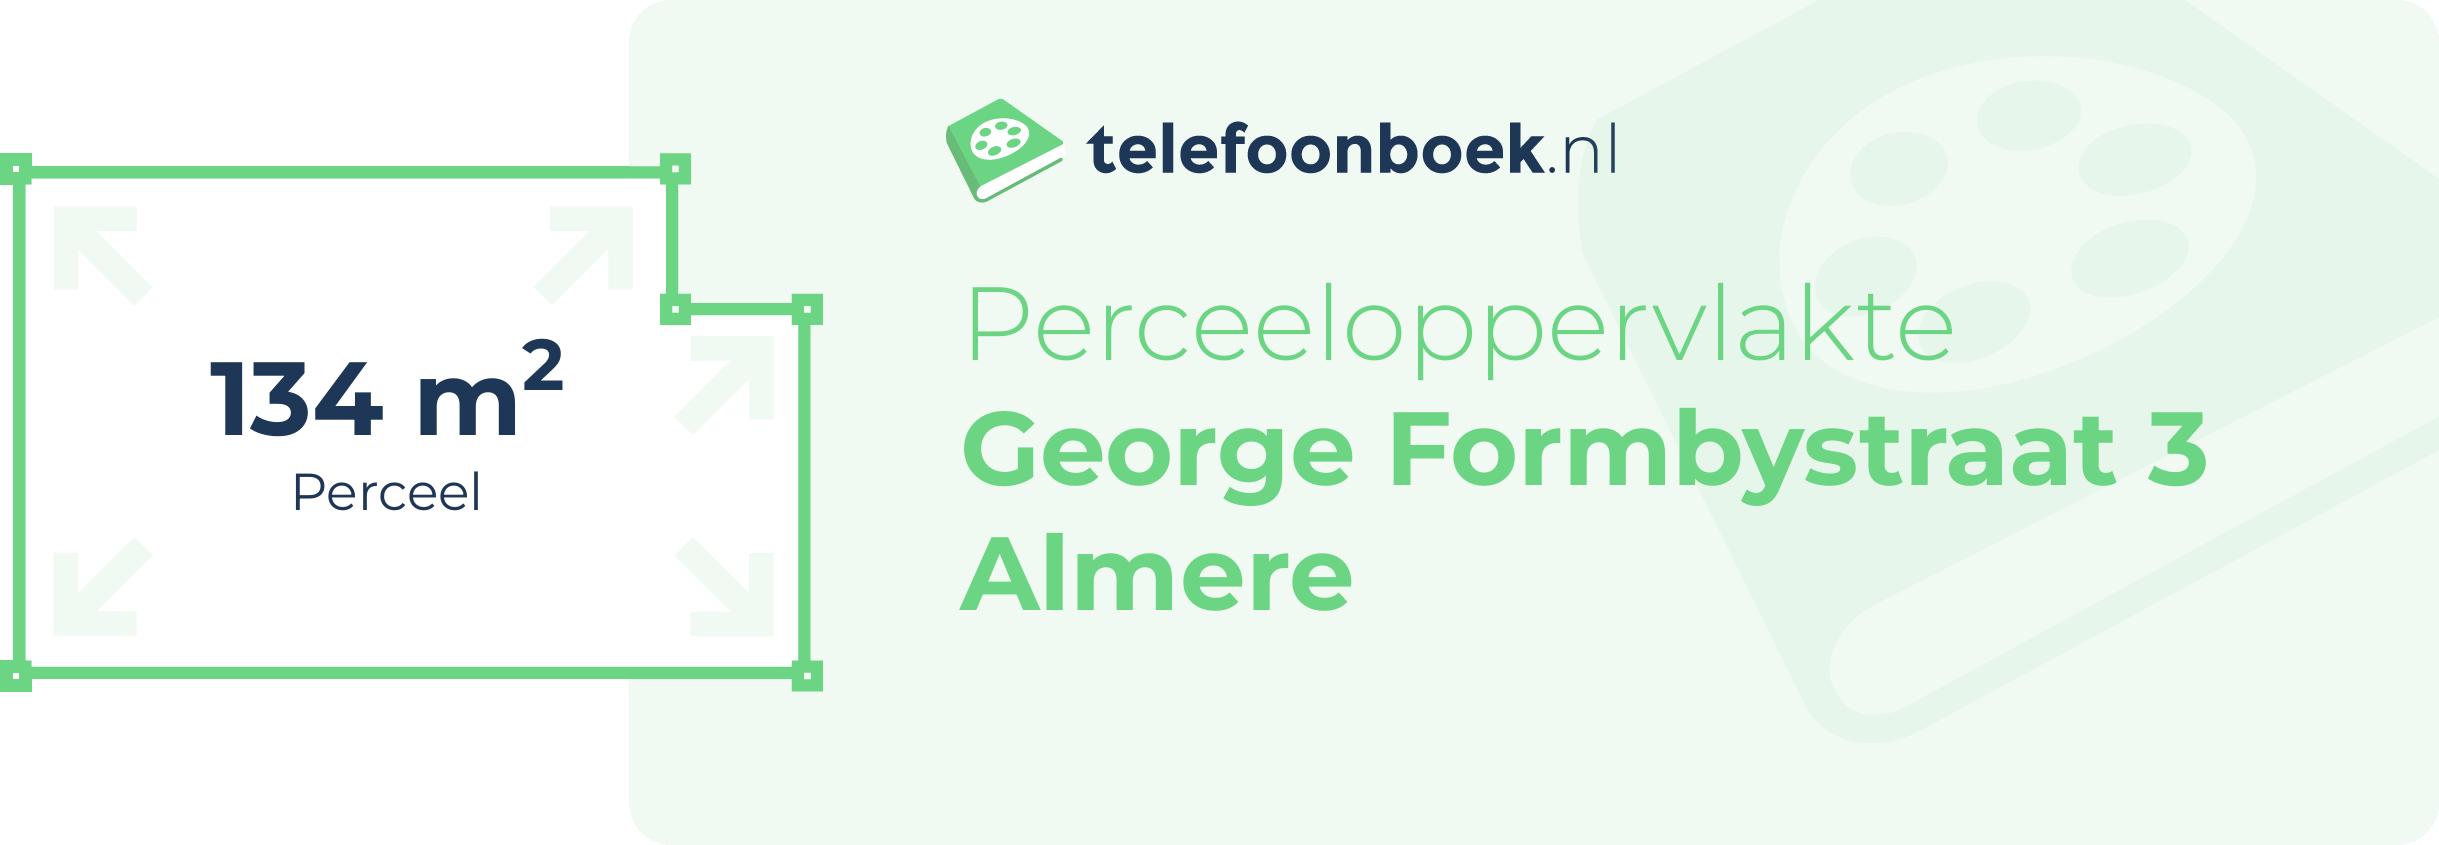 Perceeloppervlakte George Formbystraat 3 Almere